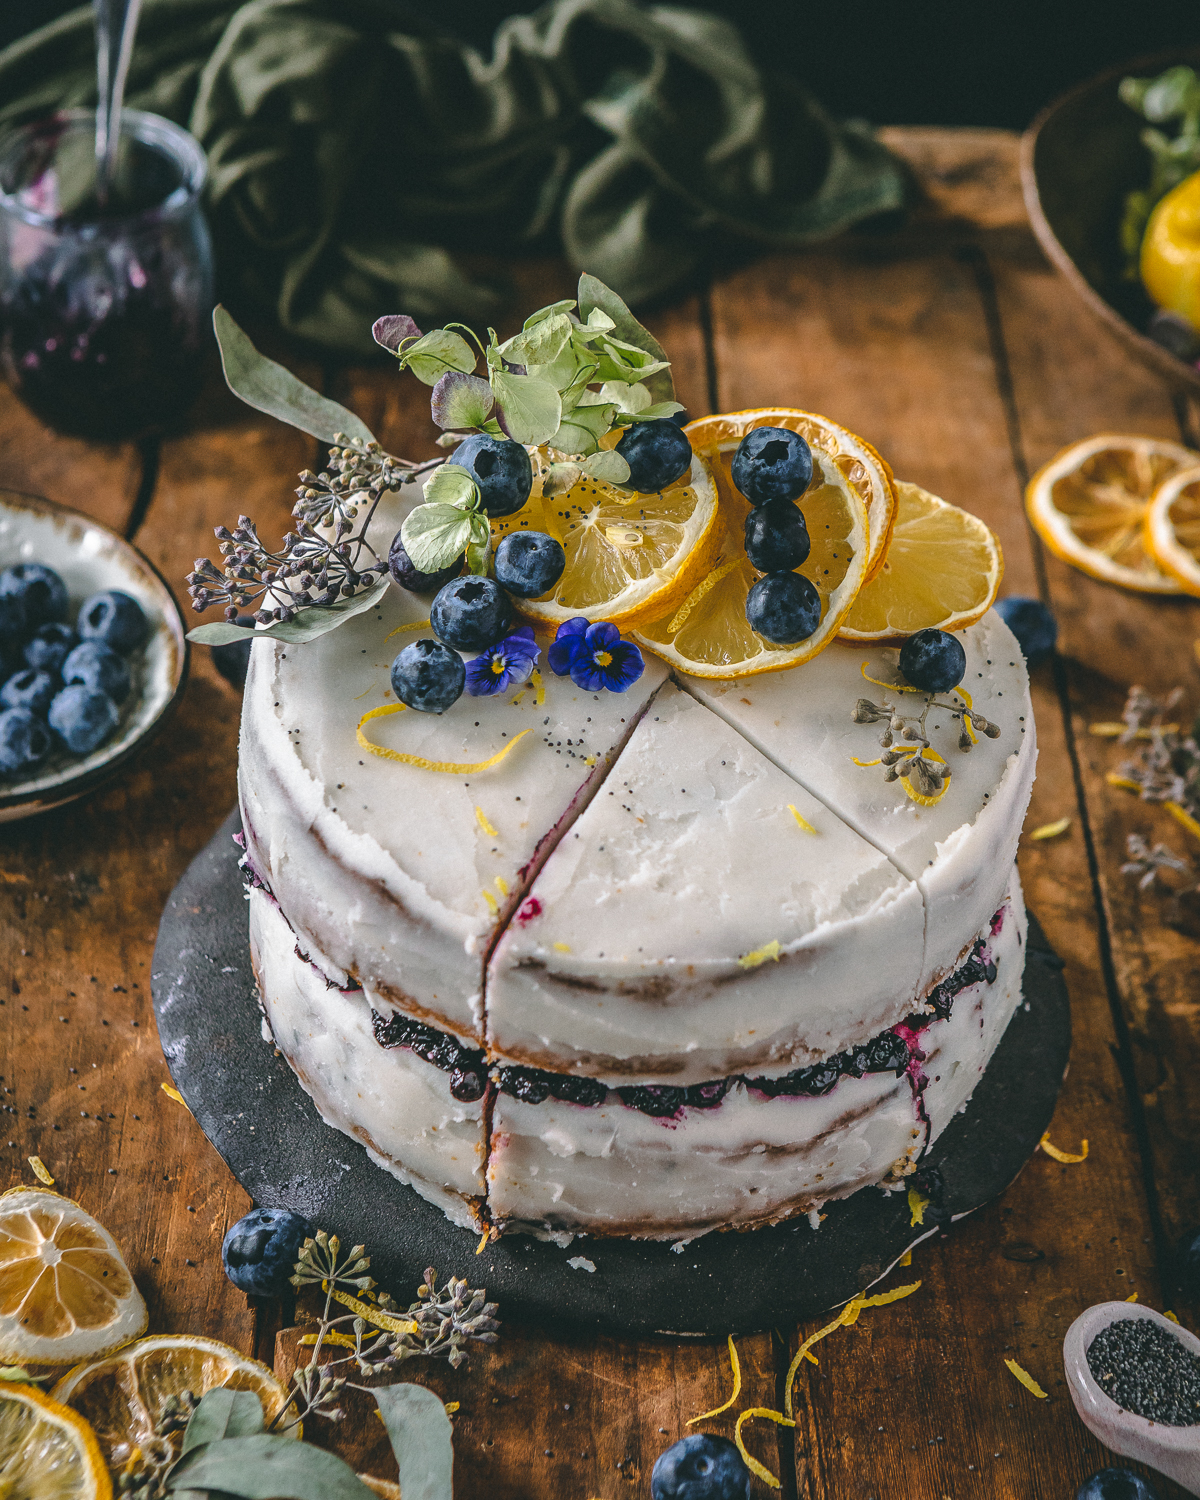 Lemon poppyseed cake with blueberries